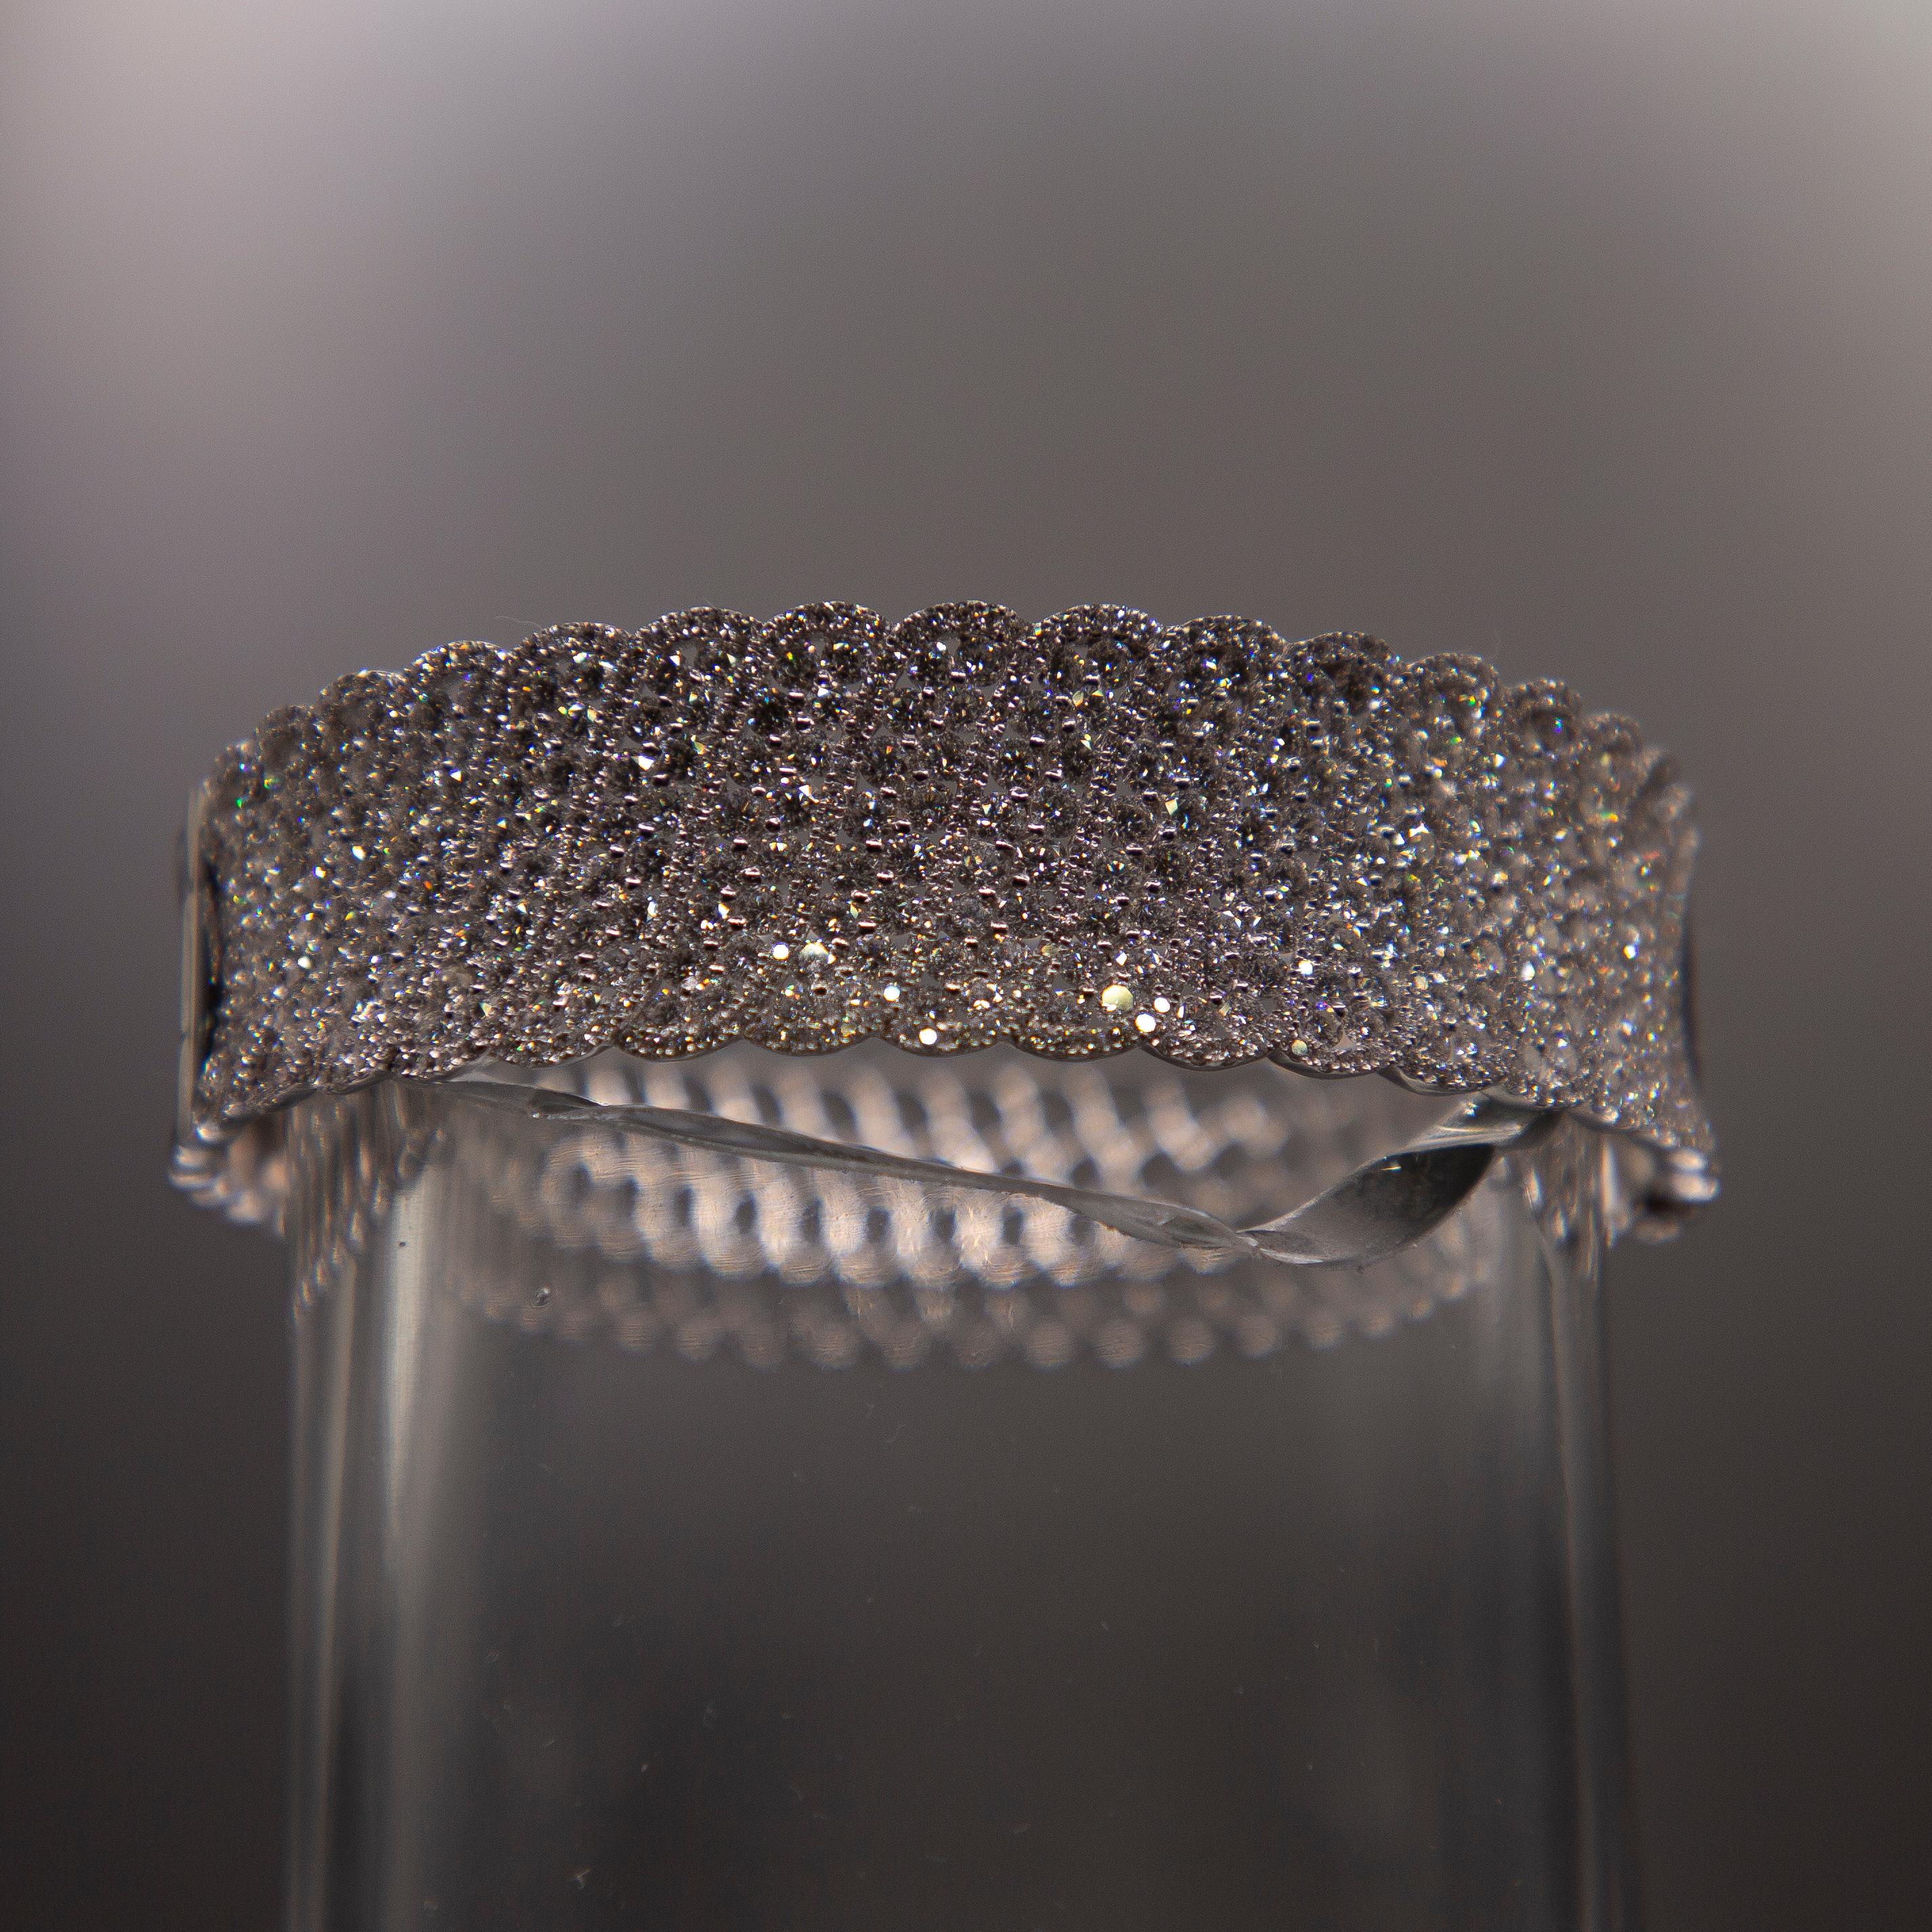 Un tissage en dentelle d'or blanc 18 carats méticuleusement fabriqué est spectaculairement serti de 684 diamants de première collection parfaitement taillés, pesant au total 10,06 carats. F VS1. Le sertissage est réalisé à l'aide d'une technique